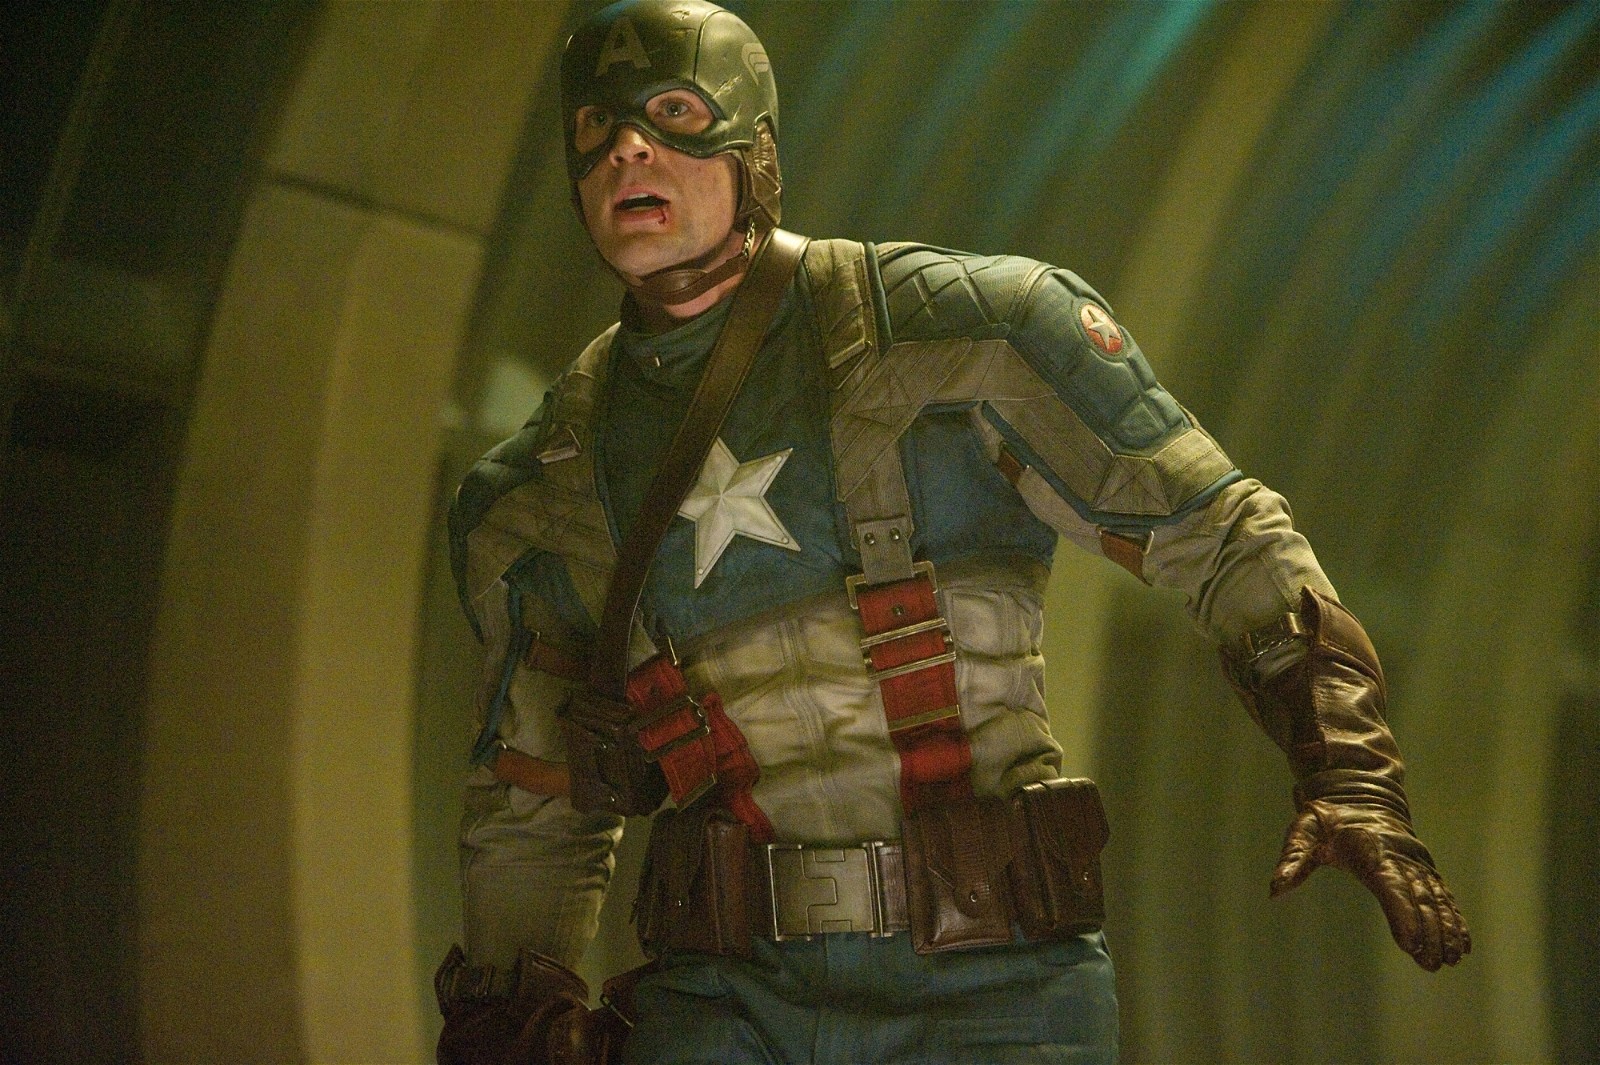 Chris Evans as Steve Rogers in Captain America: The First Avenger